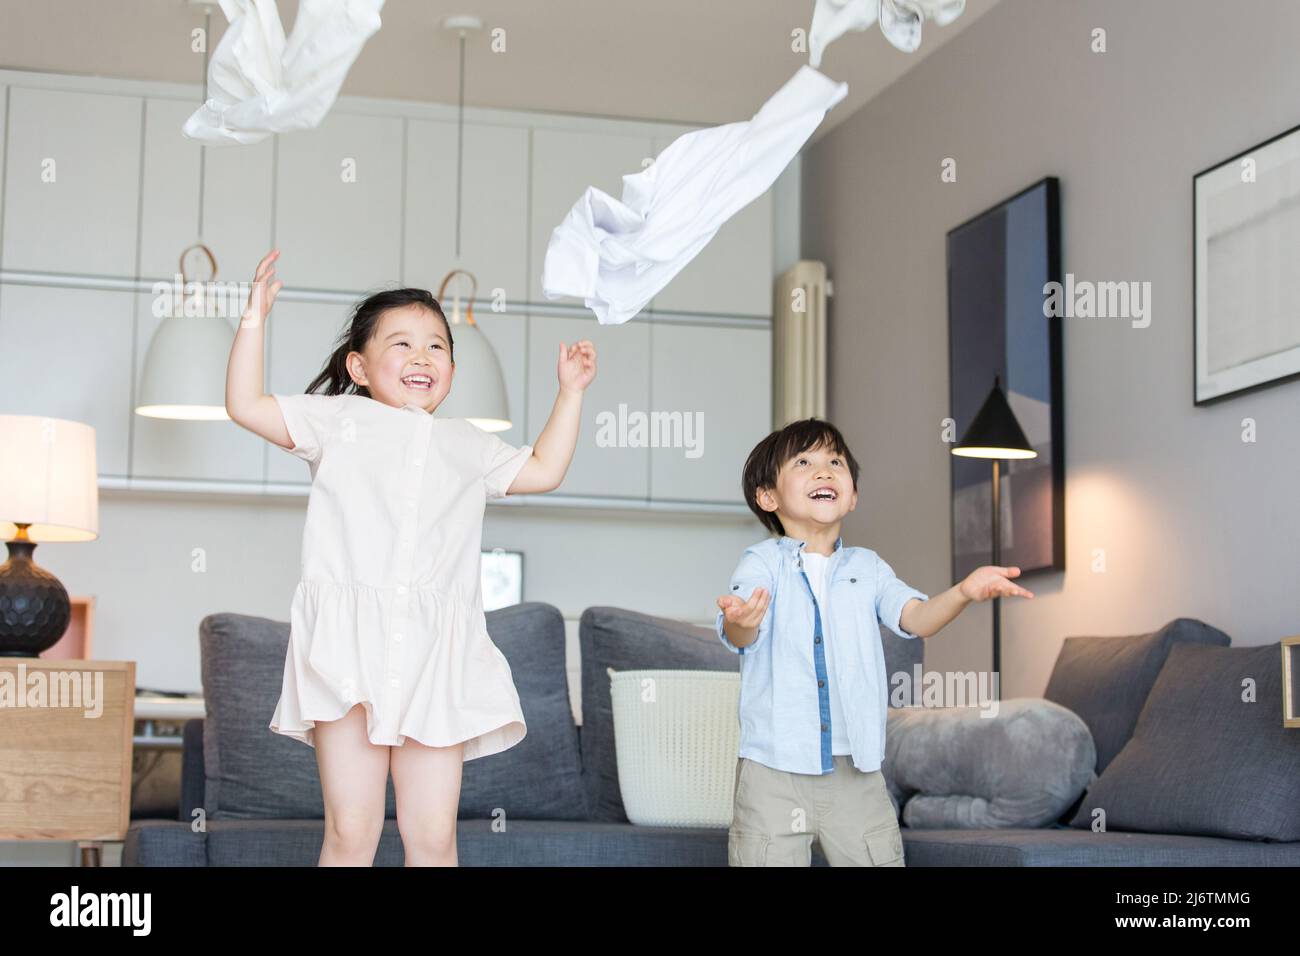 Près du canapé du salon, les frères et sœurs lancinaient leurs vêtements dans l'air - photo de stock Banque D'Images